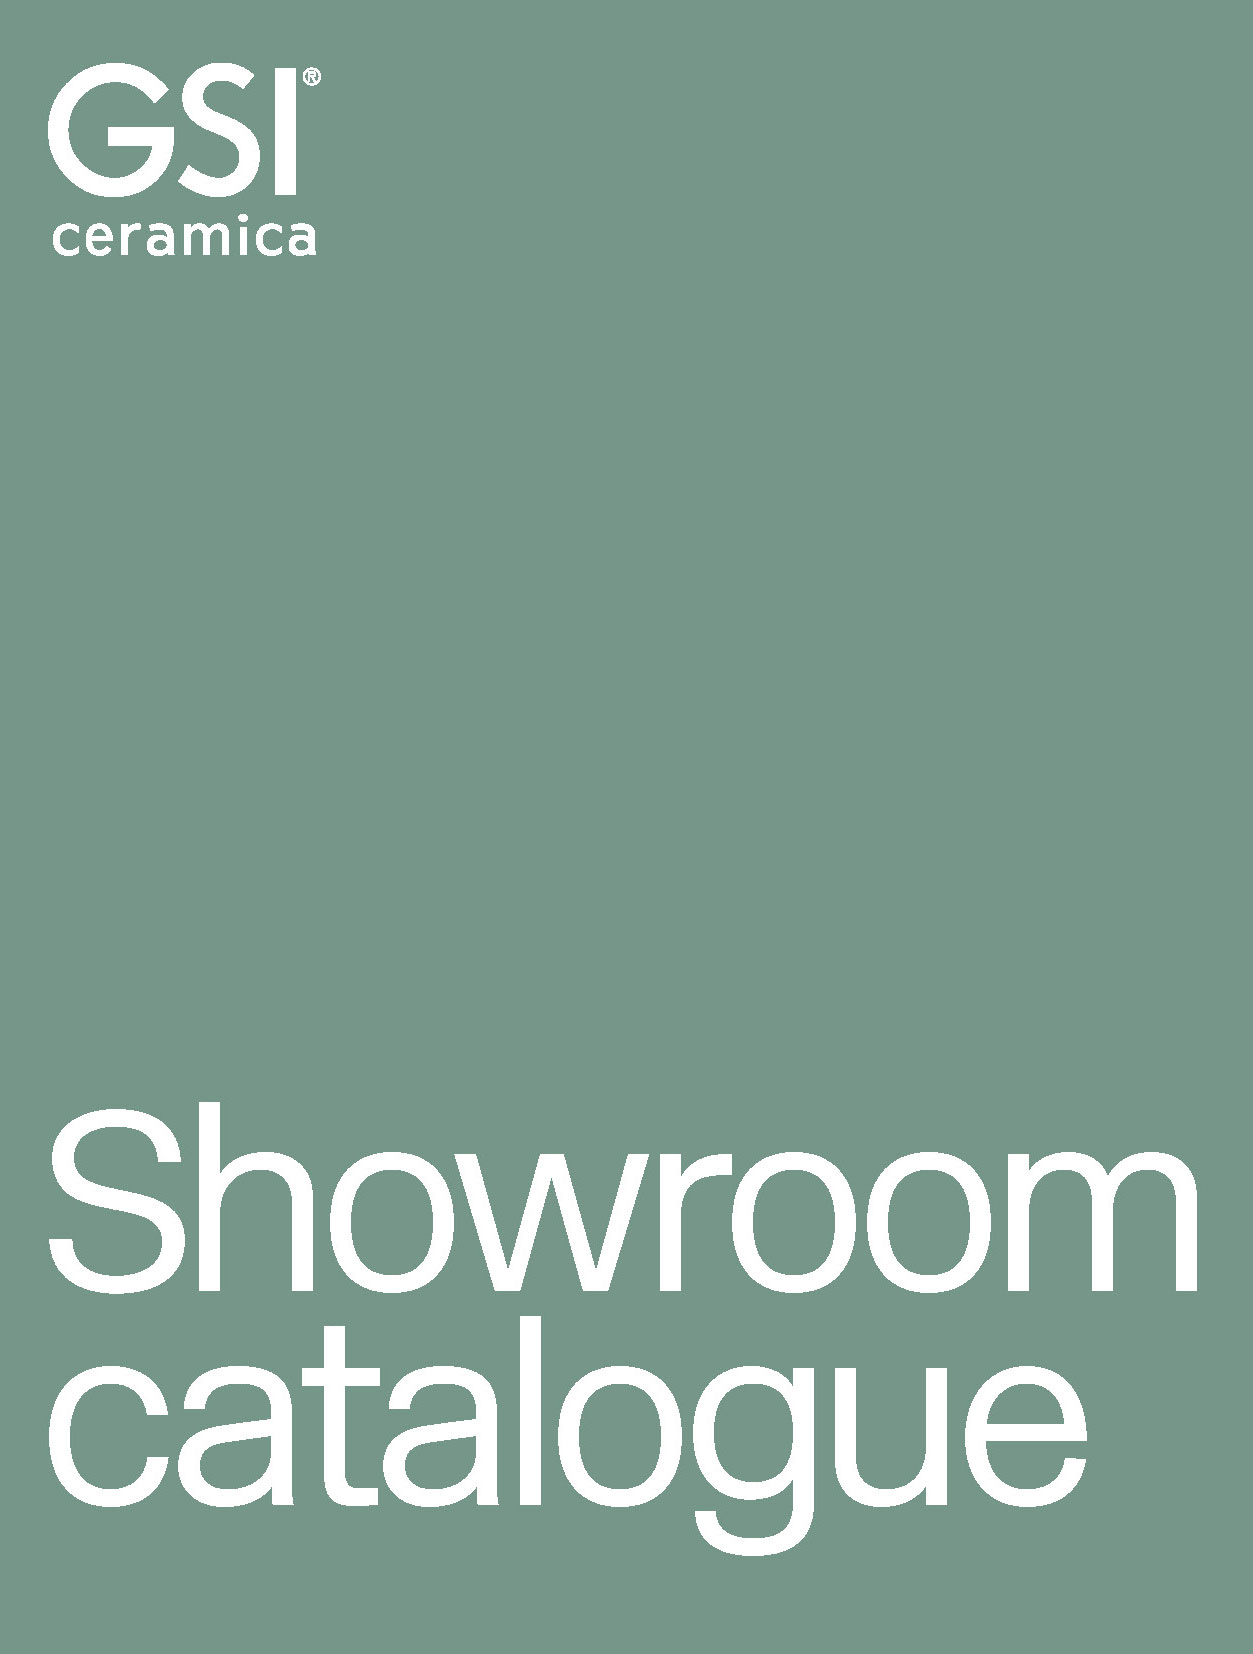 Showroom-catalogue_gsiceramica